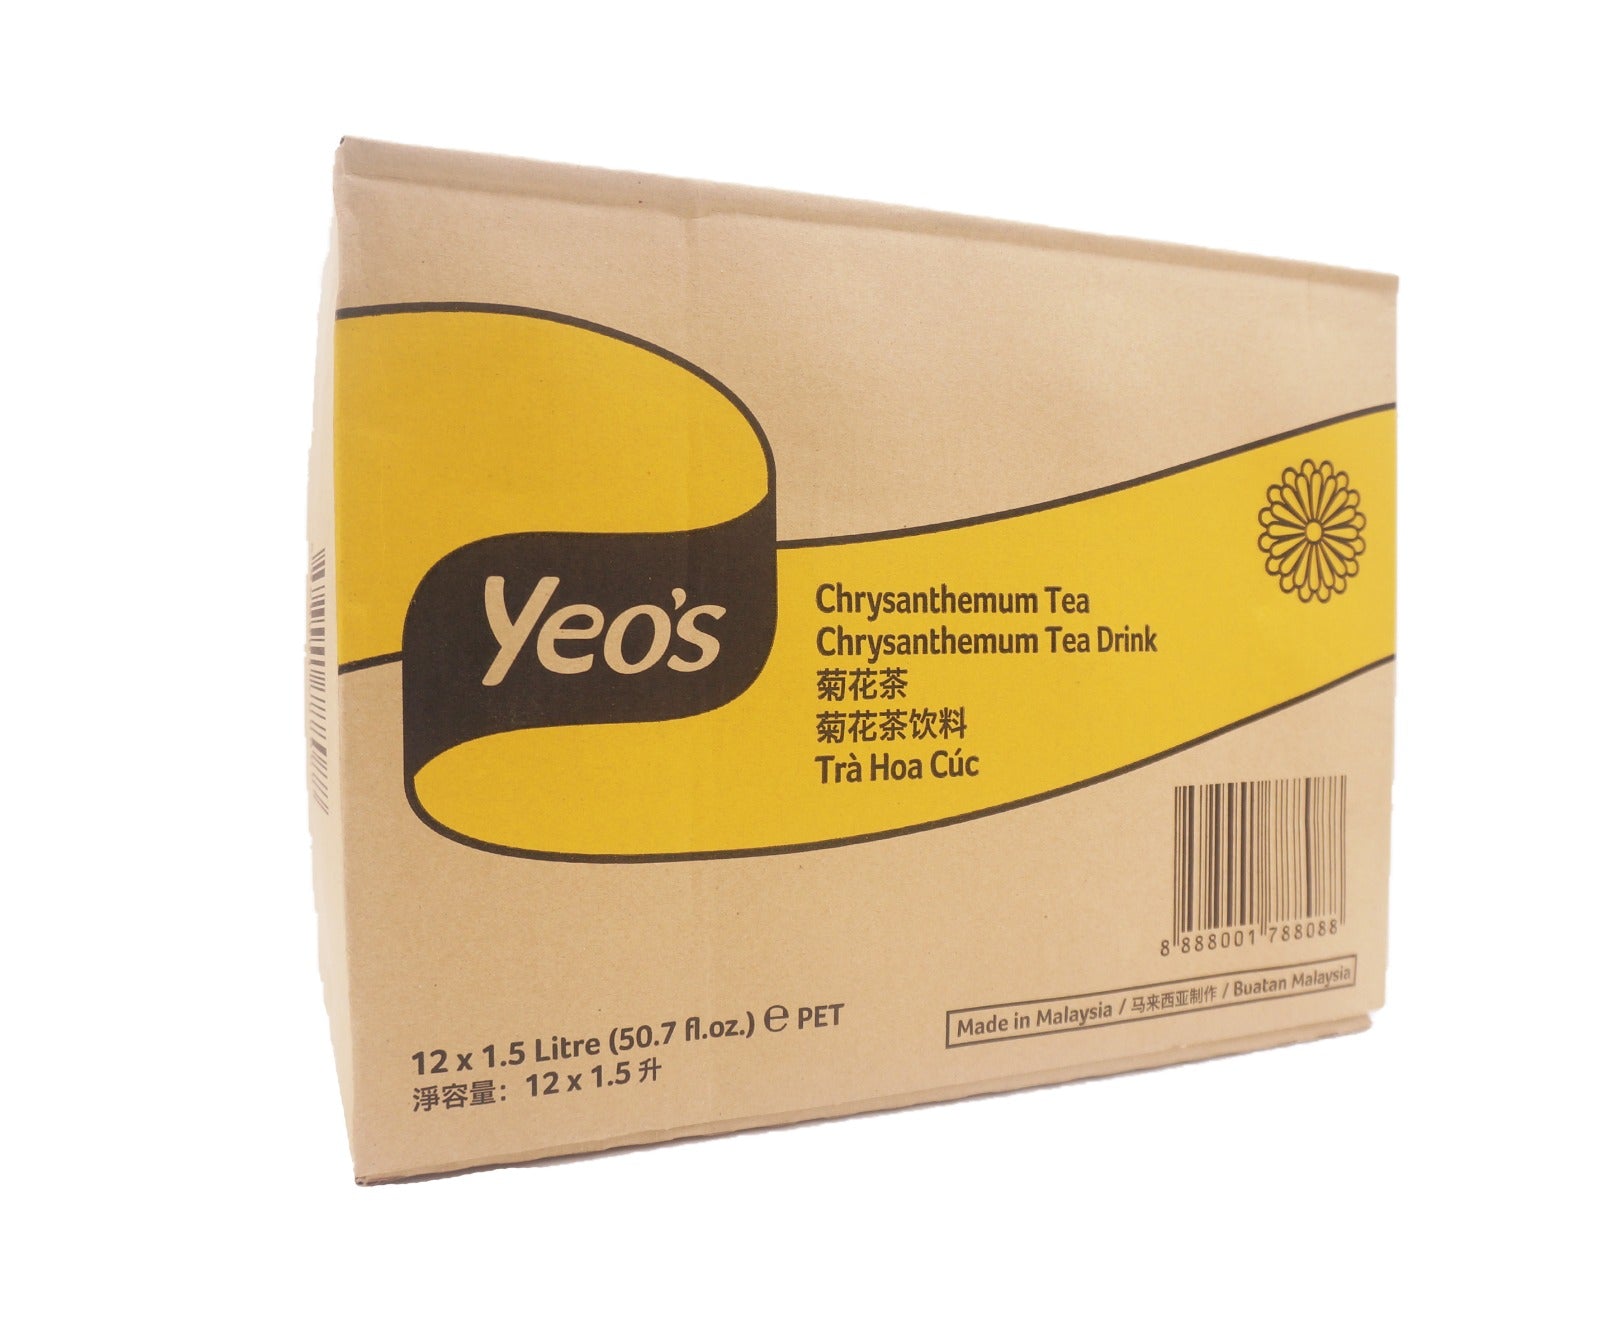 Yeos Chrysanthemum Tea Bottle (12 x 1.5L - Carton)